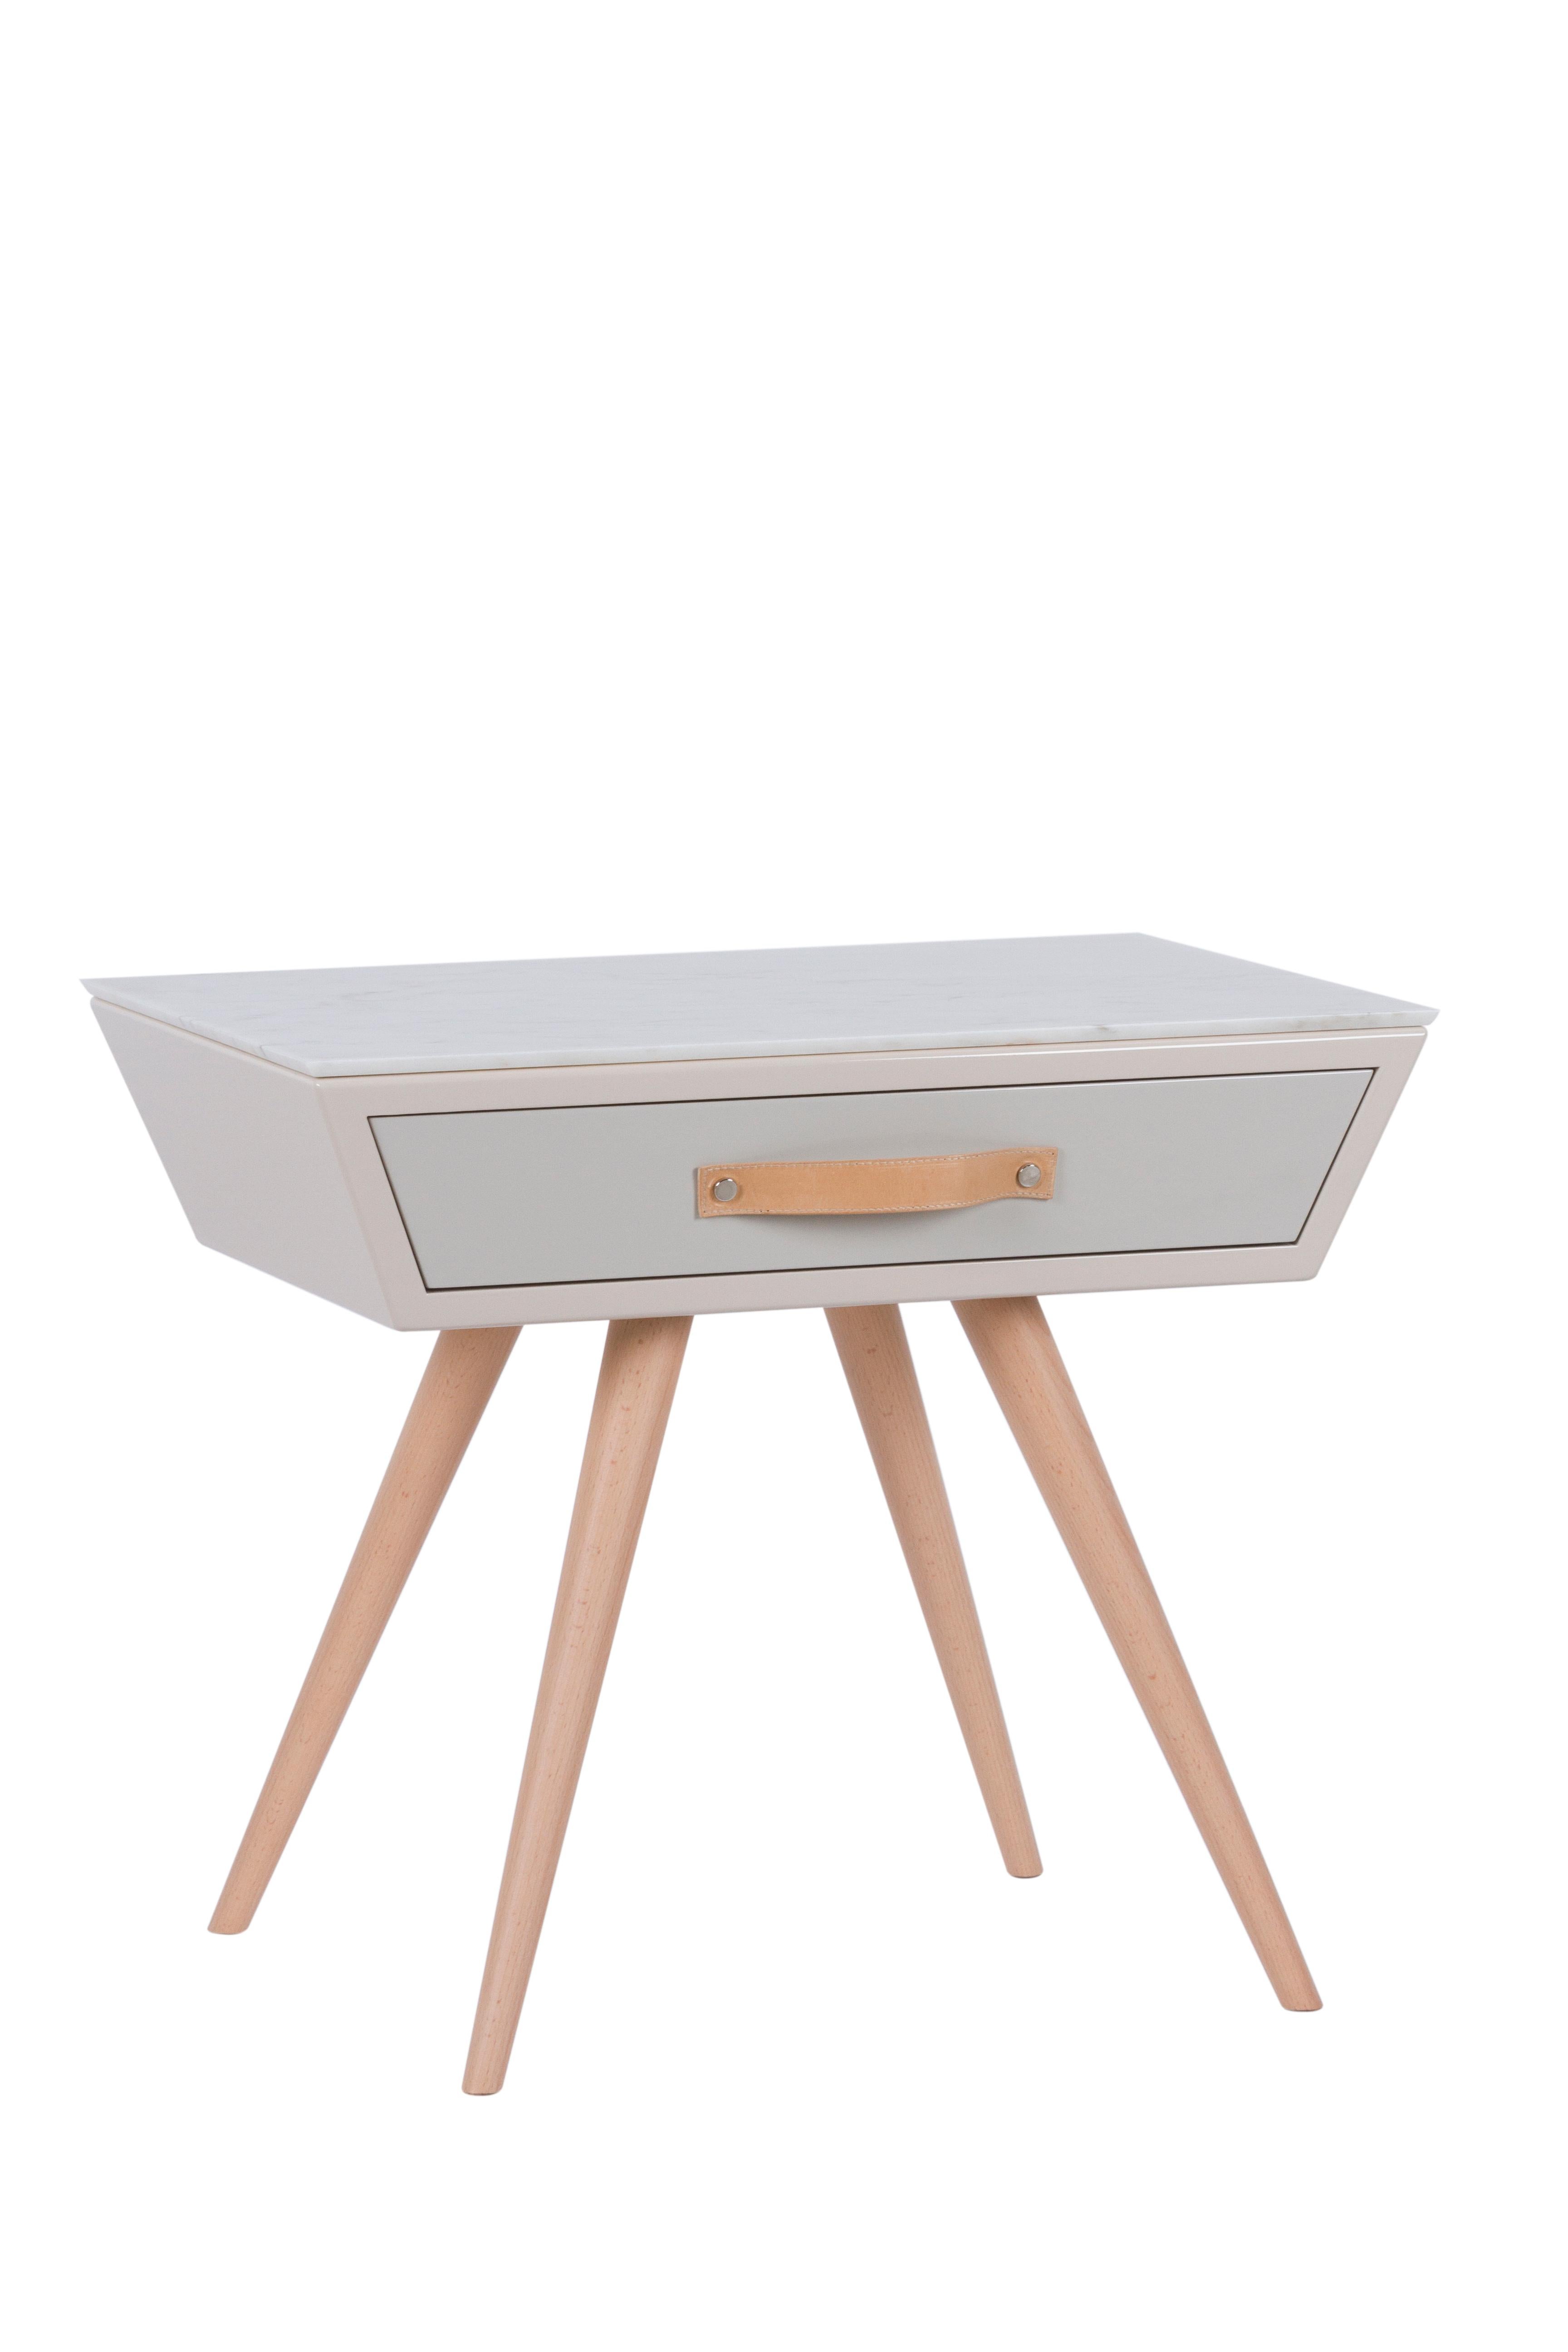 Sopro Nachttisch, Modern Collection'S, handgefertigt in Portugal - Europa von GF Modern.

Der Nachttisch Sopro bietet ein zeitloses Design für Ihren Wohnbereich. Sopro ist ein Nachttisch aus Holz mit einer in Beige und Hellgrau lackierten Schublade,